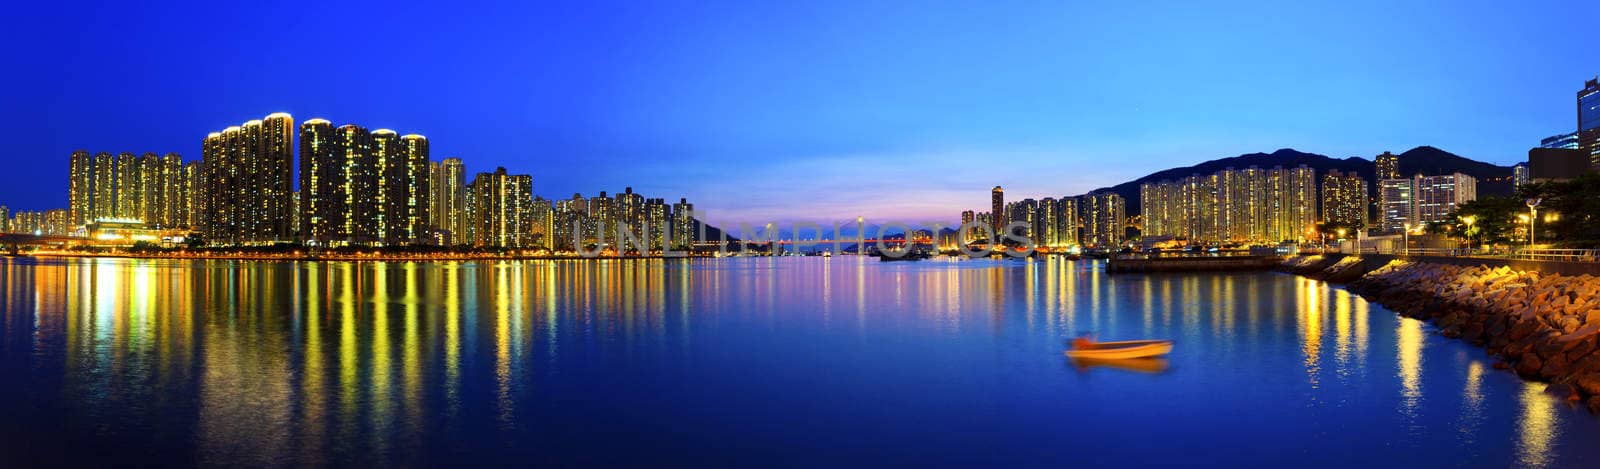 Hong Kong harbor view by kawing921